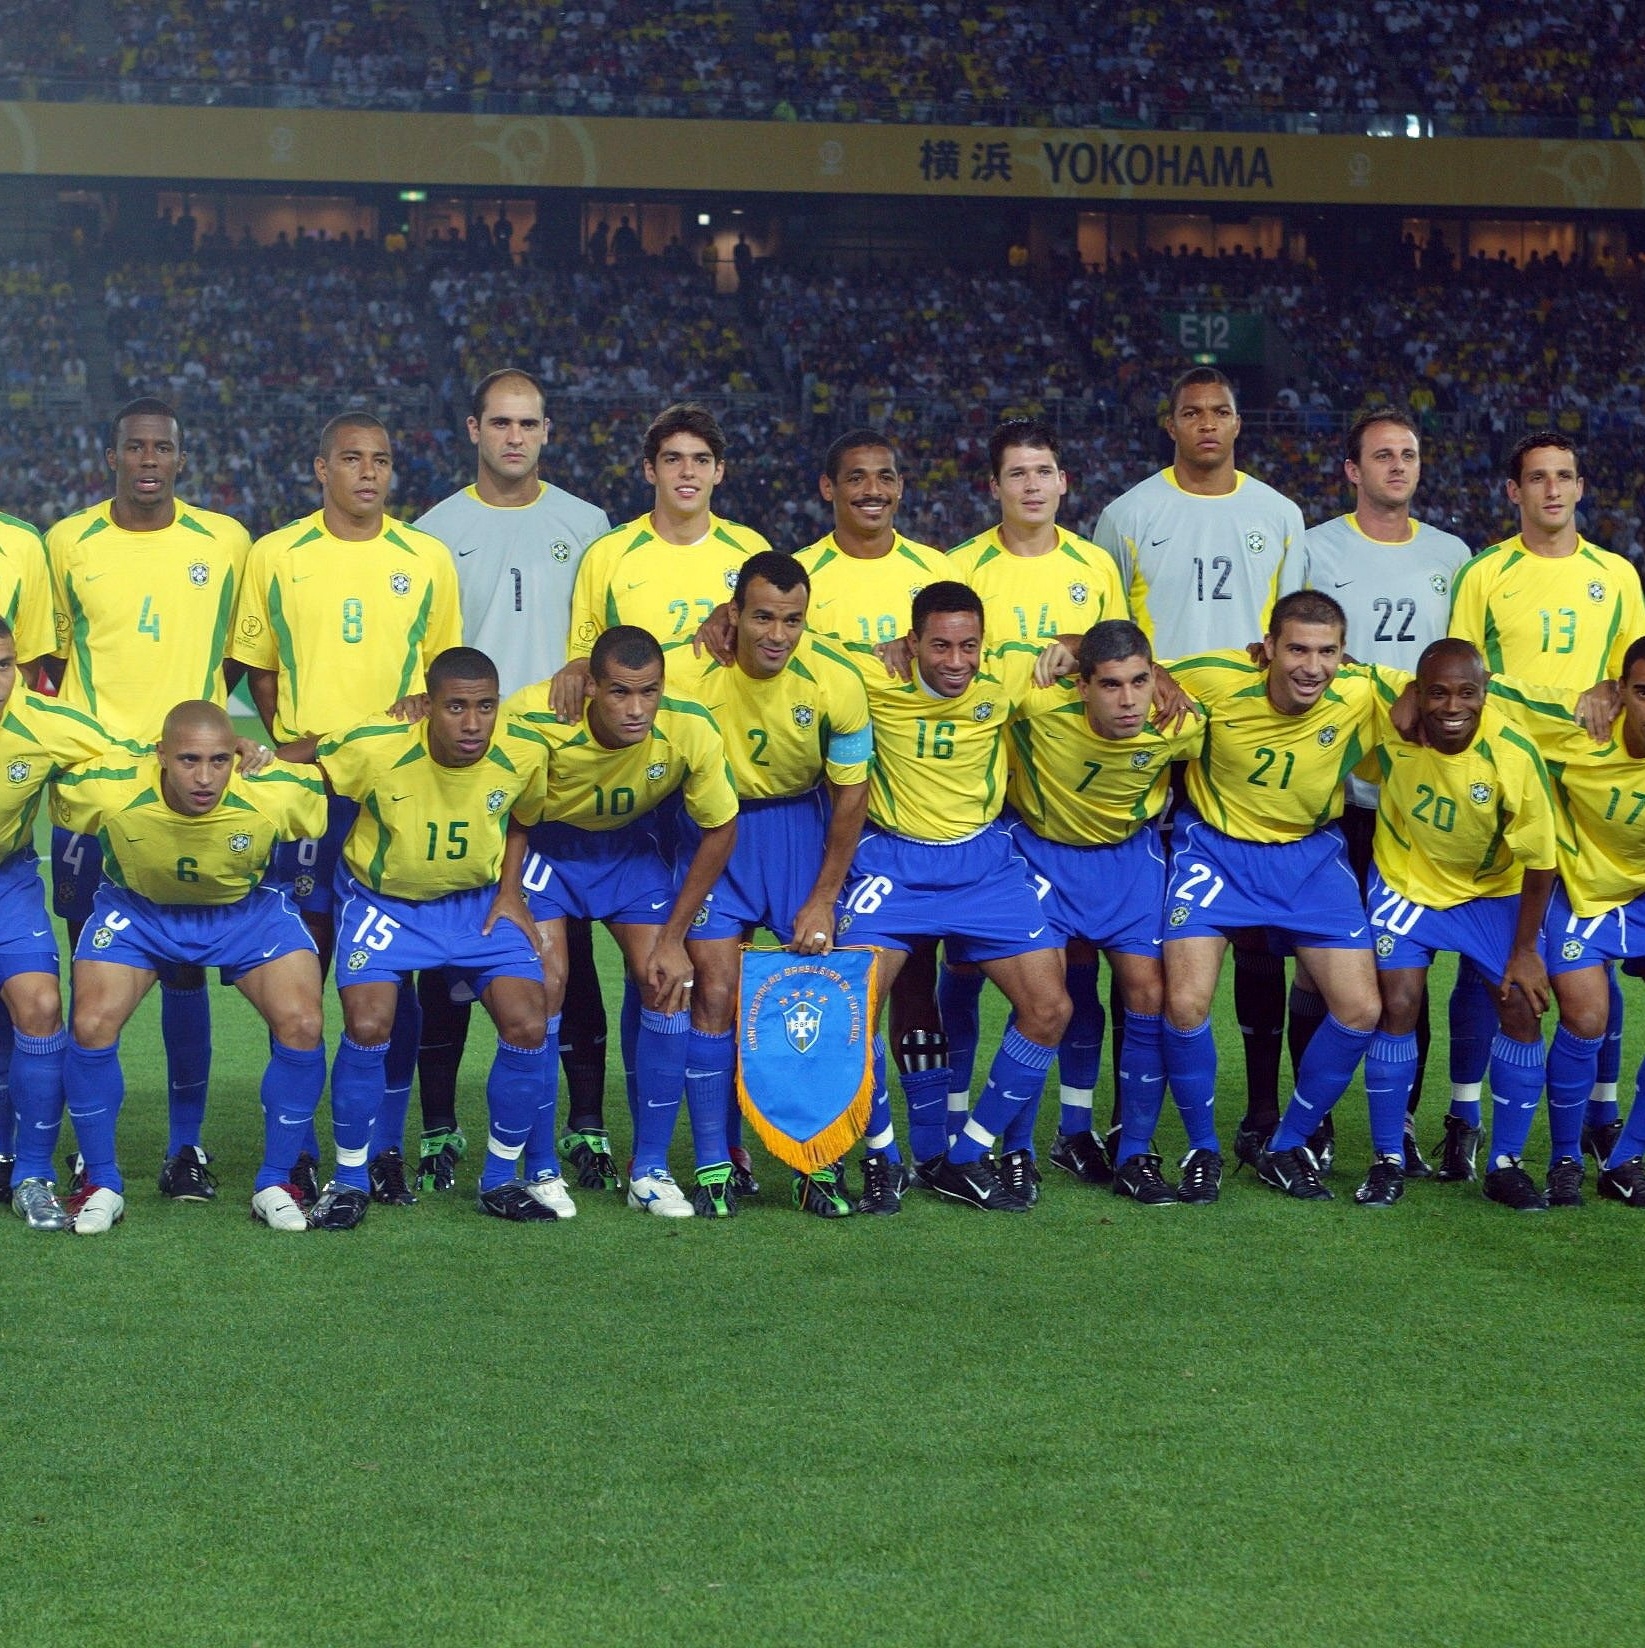 Camiseta Escalação Brasil Penta Copa do Mundo 2002